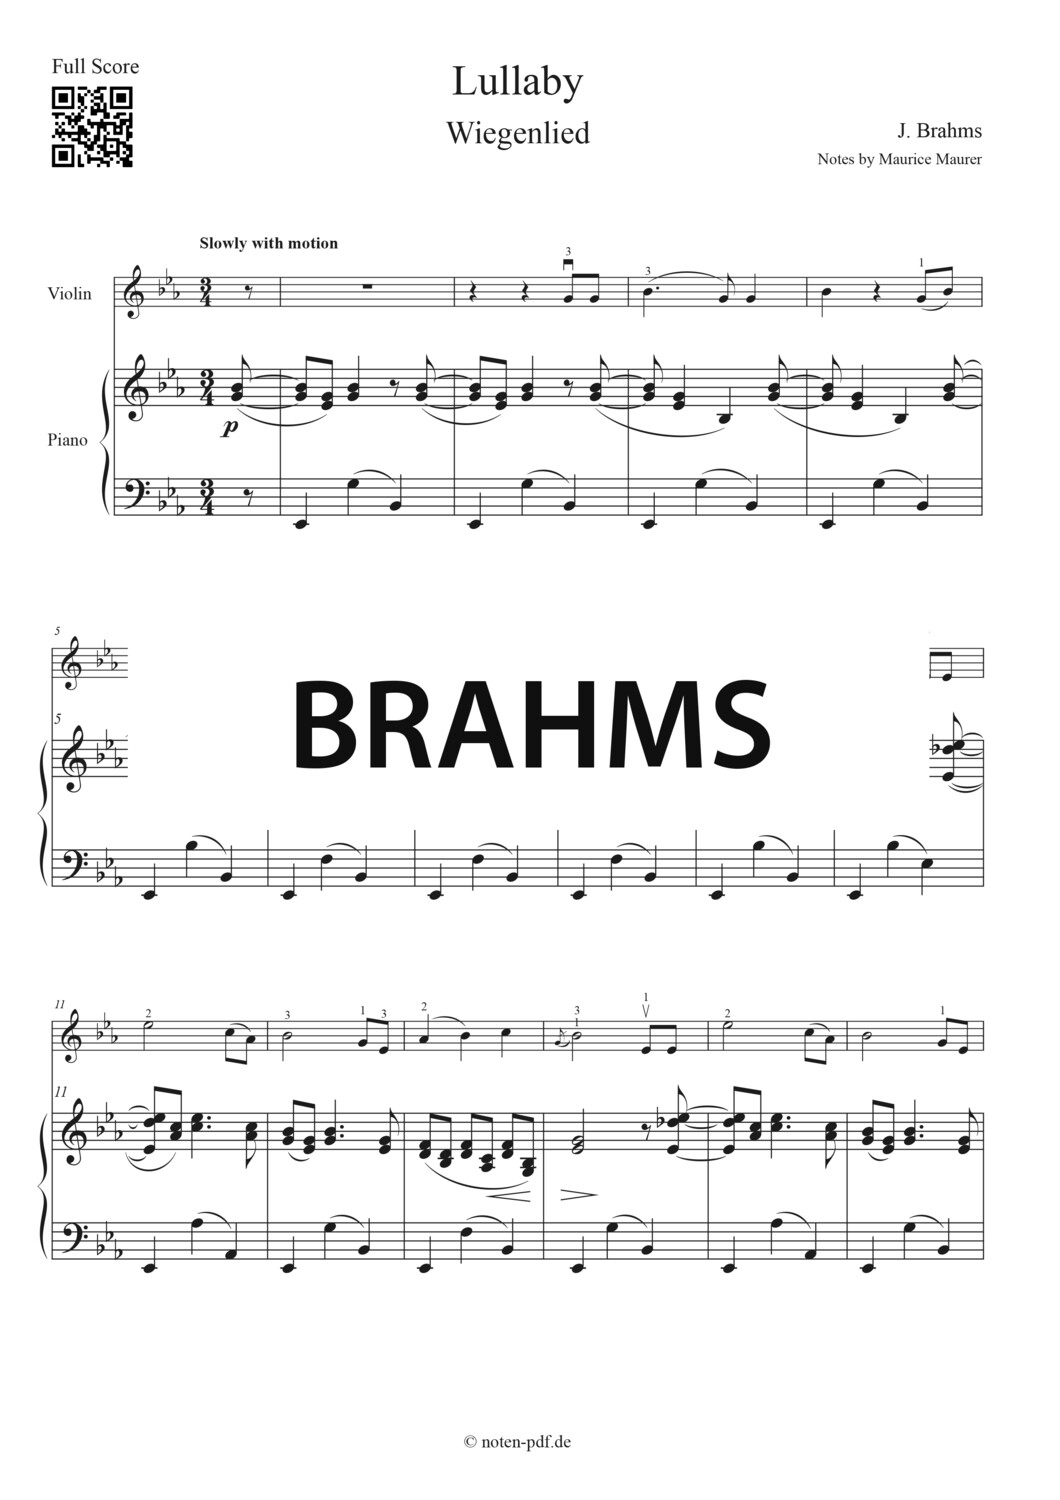 Brahms: Lullaby (Wiegenlied)